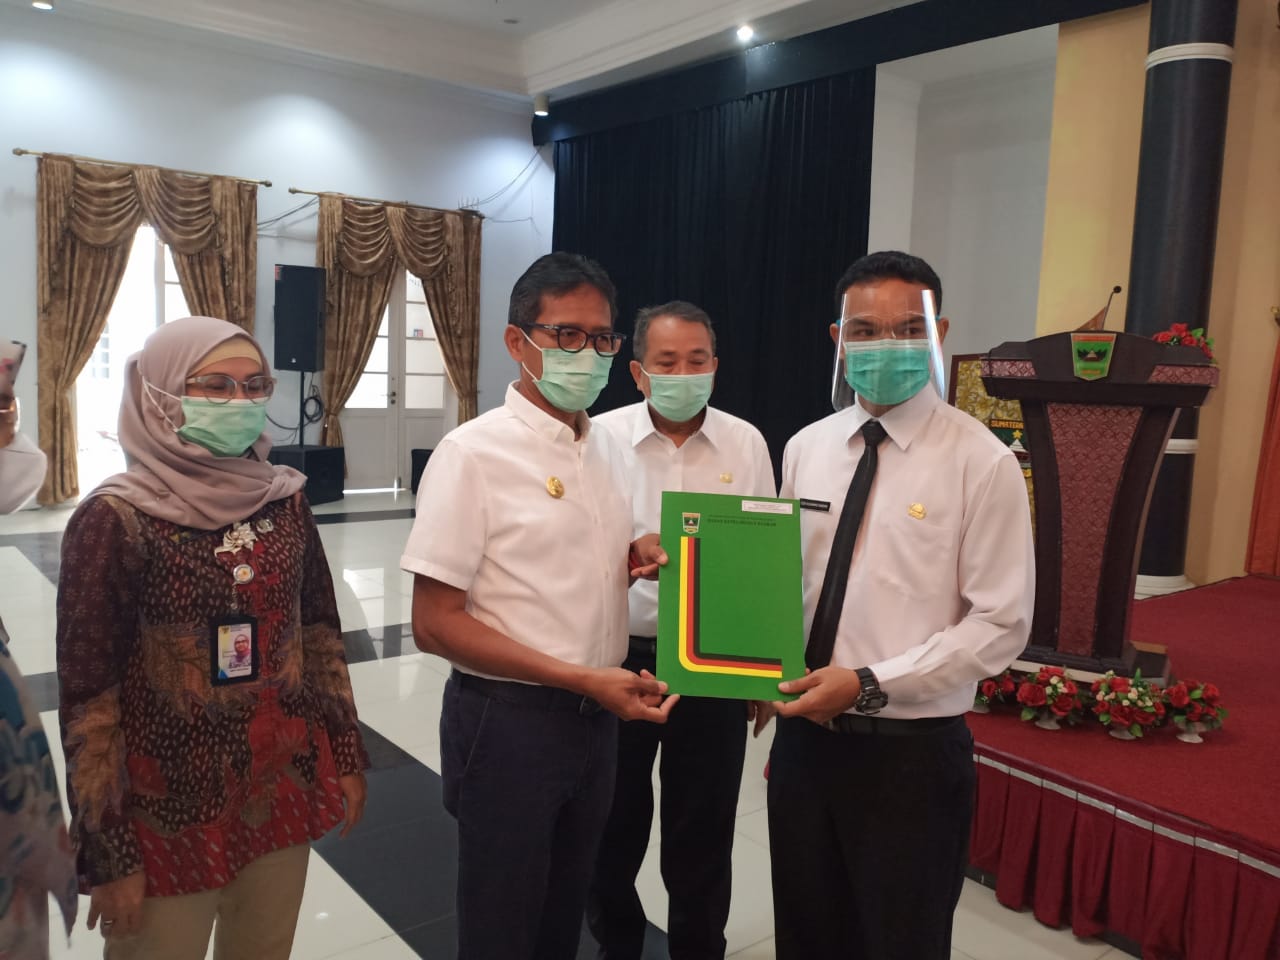 Gubernur Sumbar, Irwan Prayitno, menyerahkan SK 575 CPNS di lingkungan pemprov Sumbar, yang diterima oleh perwakilan CPNS, Rabu (20/1/2021) di aula kantor gubernur, Padang.